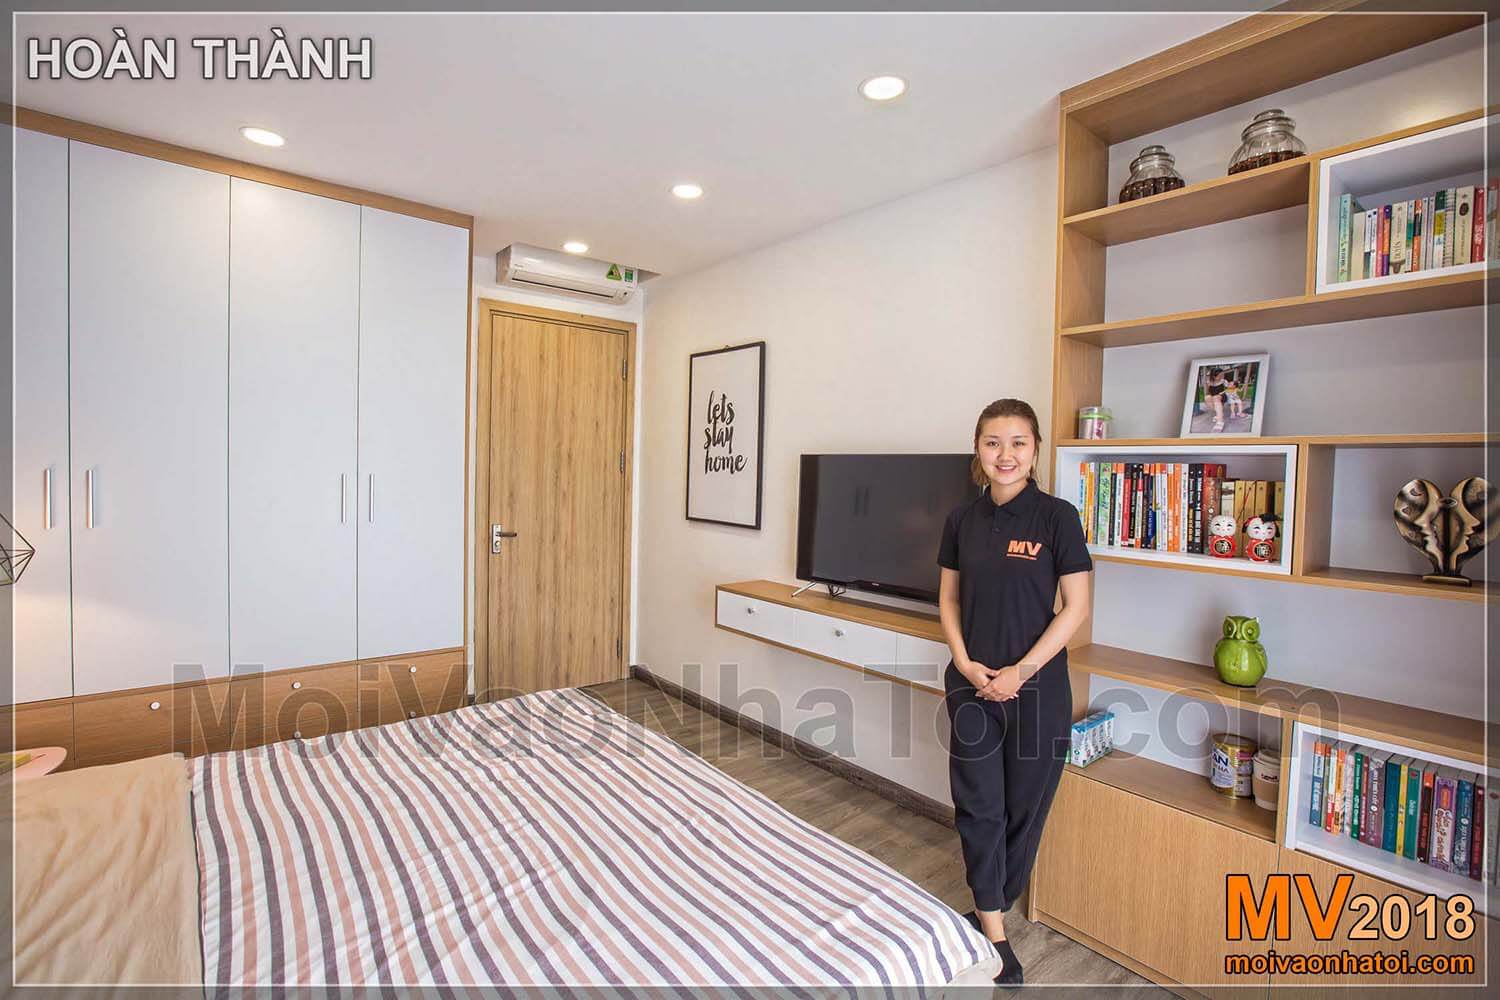 Kompaktní a jednoduché regály zvětšují prostor Dang Xa Apartment